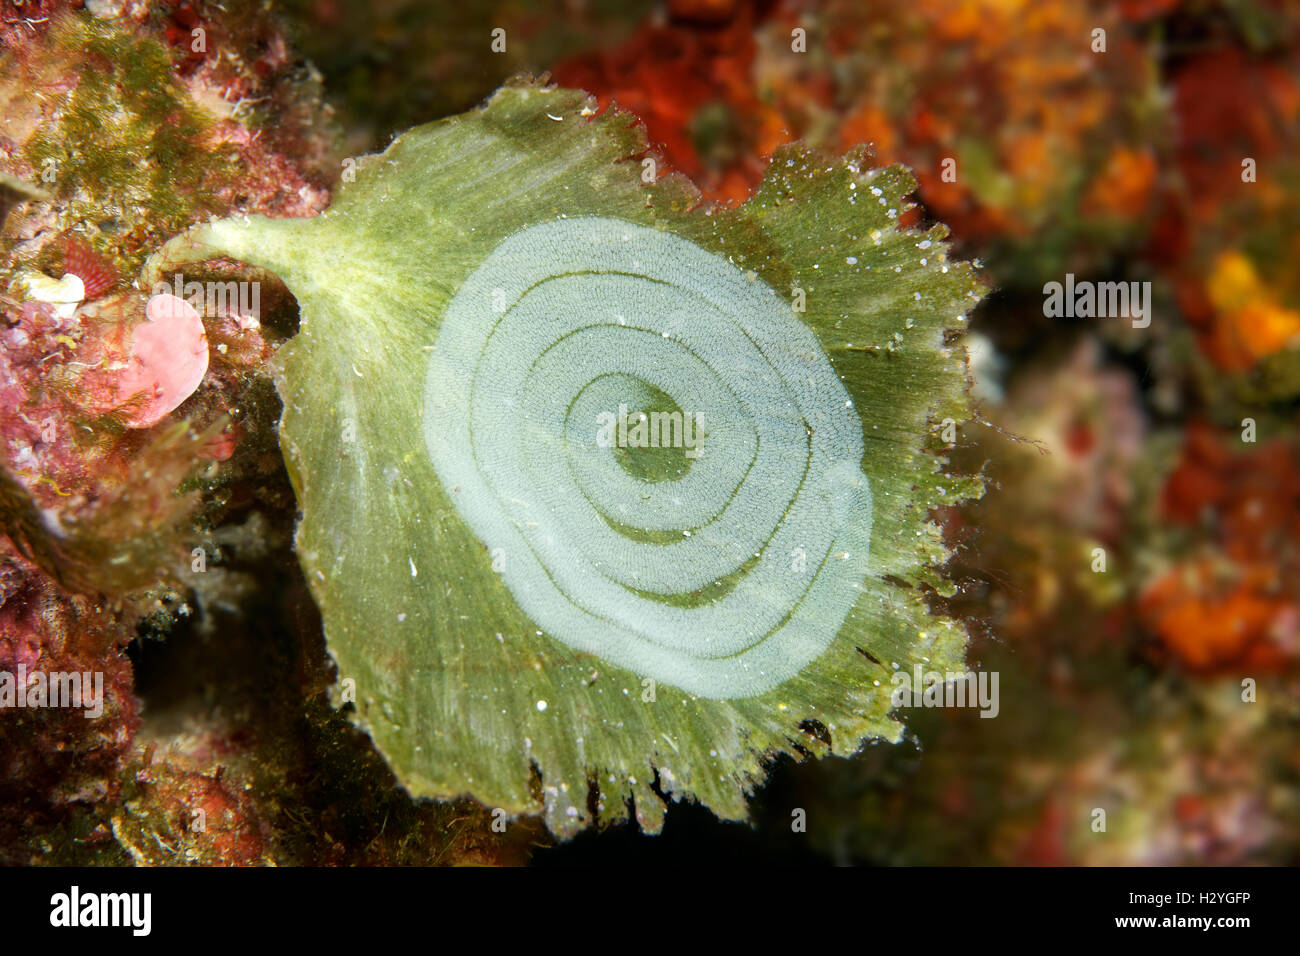 Tele uno slug sulle alghe (Udotea petiolata), Sithonia, Calcidica, anche Halkidiki, Egeo, Mediterraneo, Grecia Foto Stock